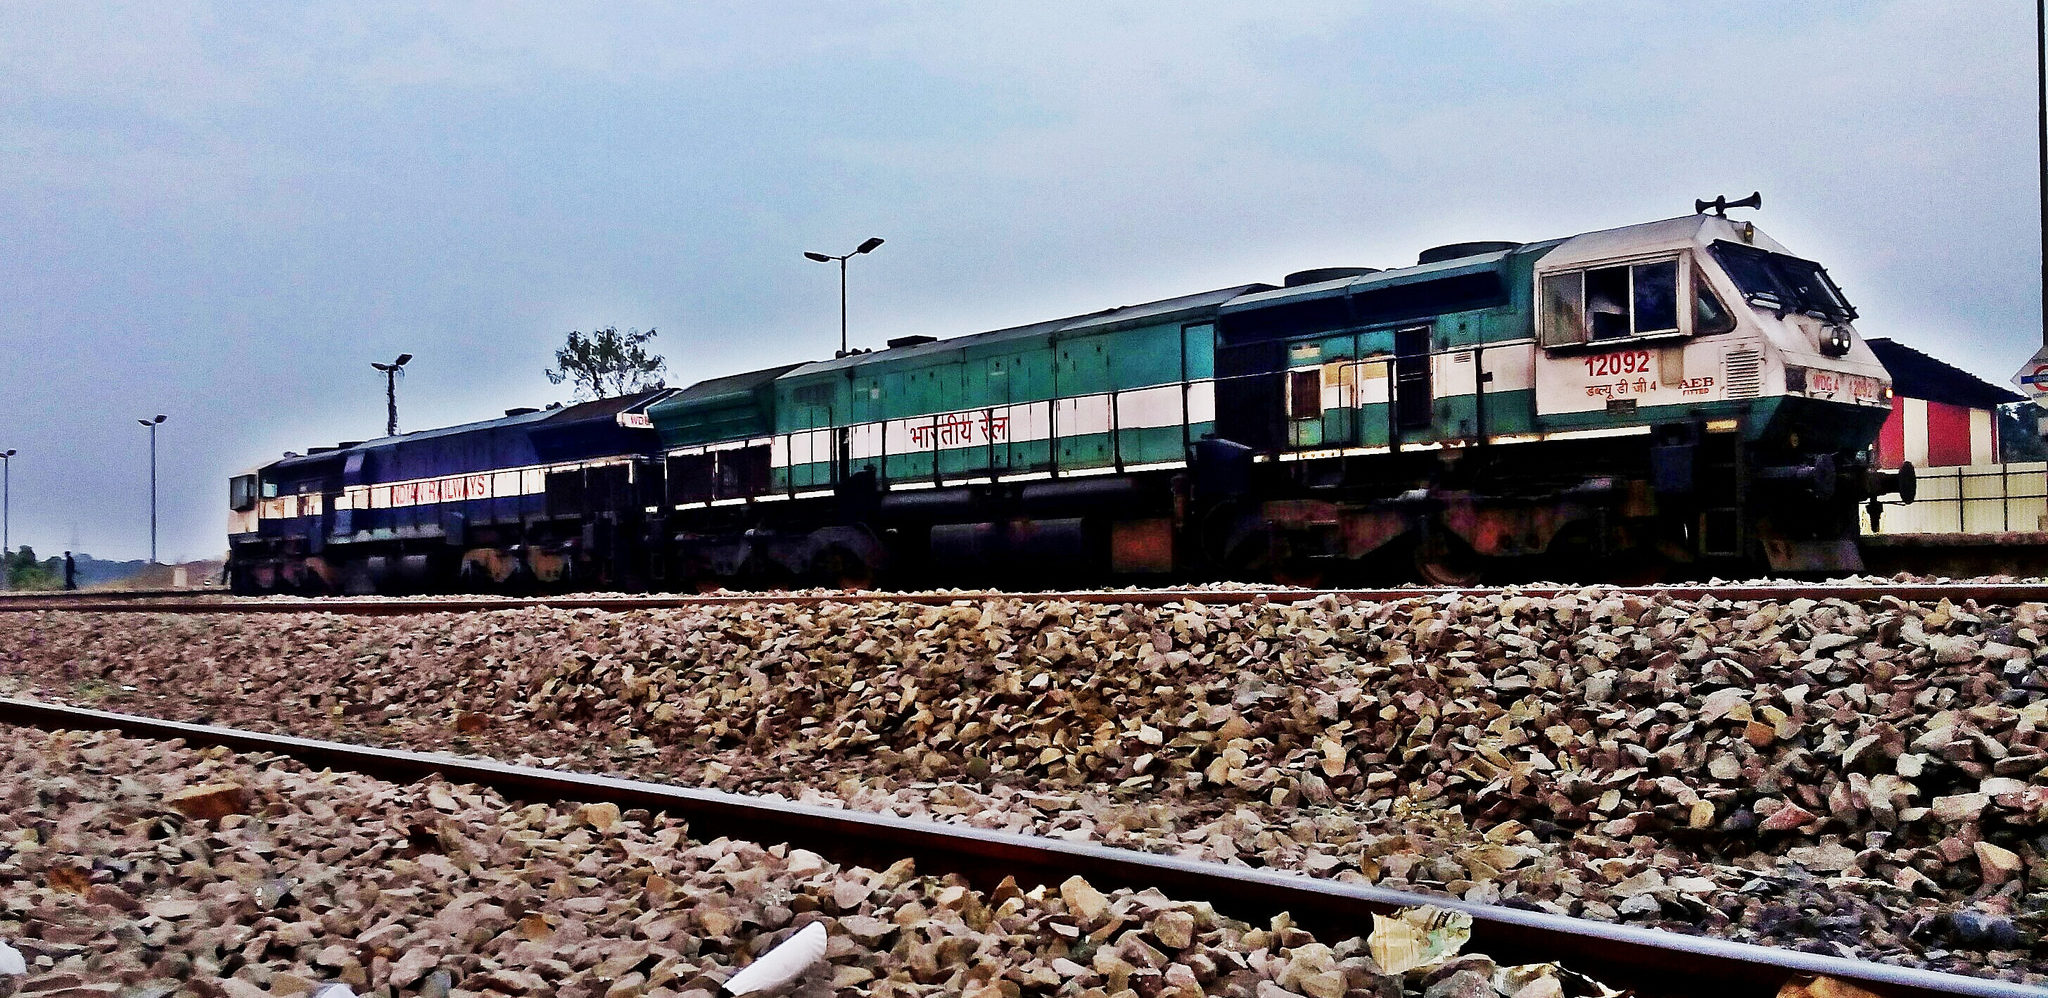 trein in India, beste treinritten, indian railway, best trains in north india, trains north india